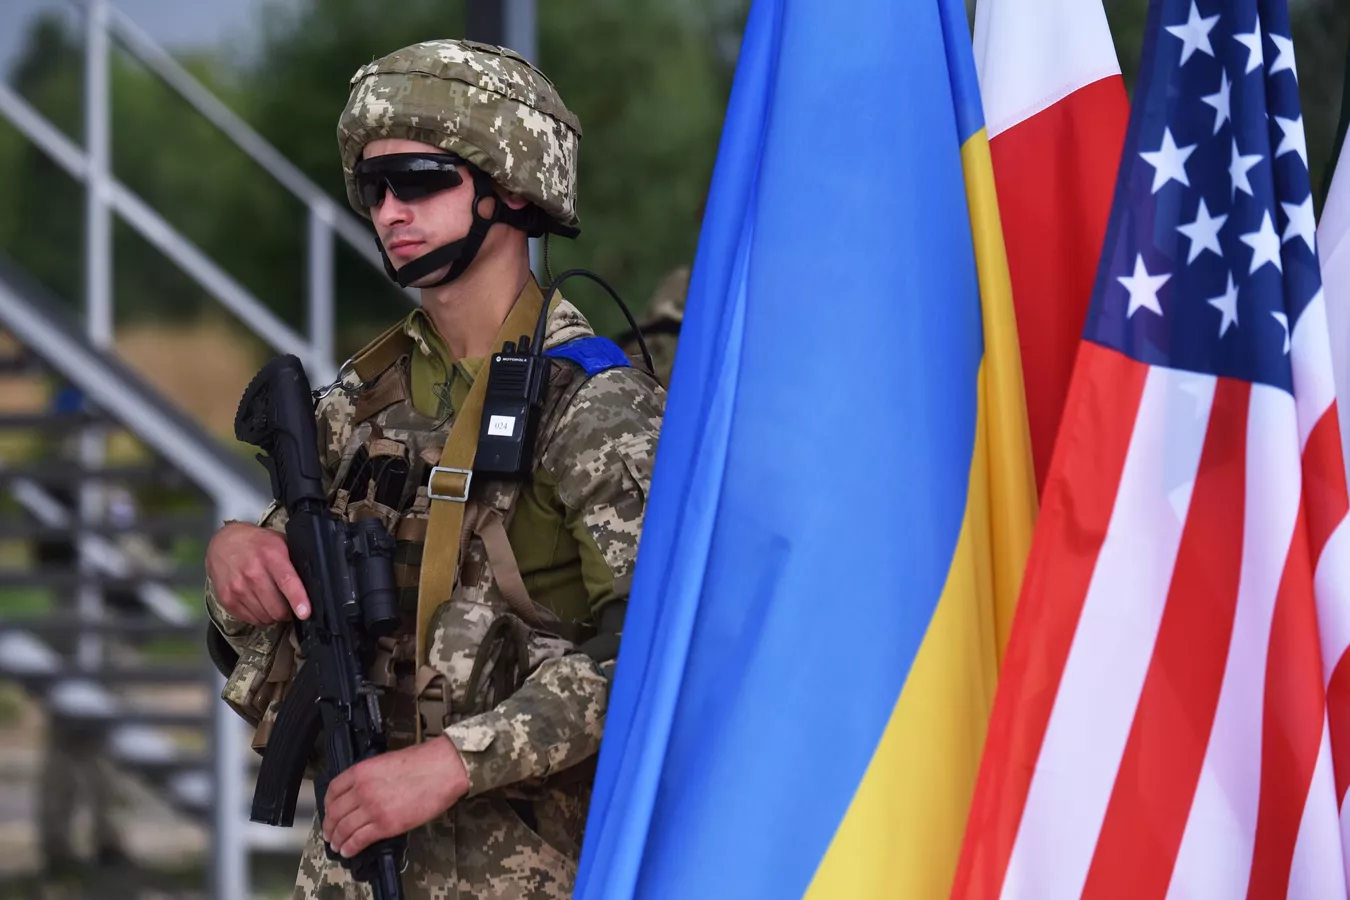 Presencia de la Alianza Atlántica en Ucrania confirma guerra híbrida contra Rusia